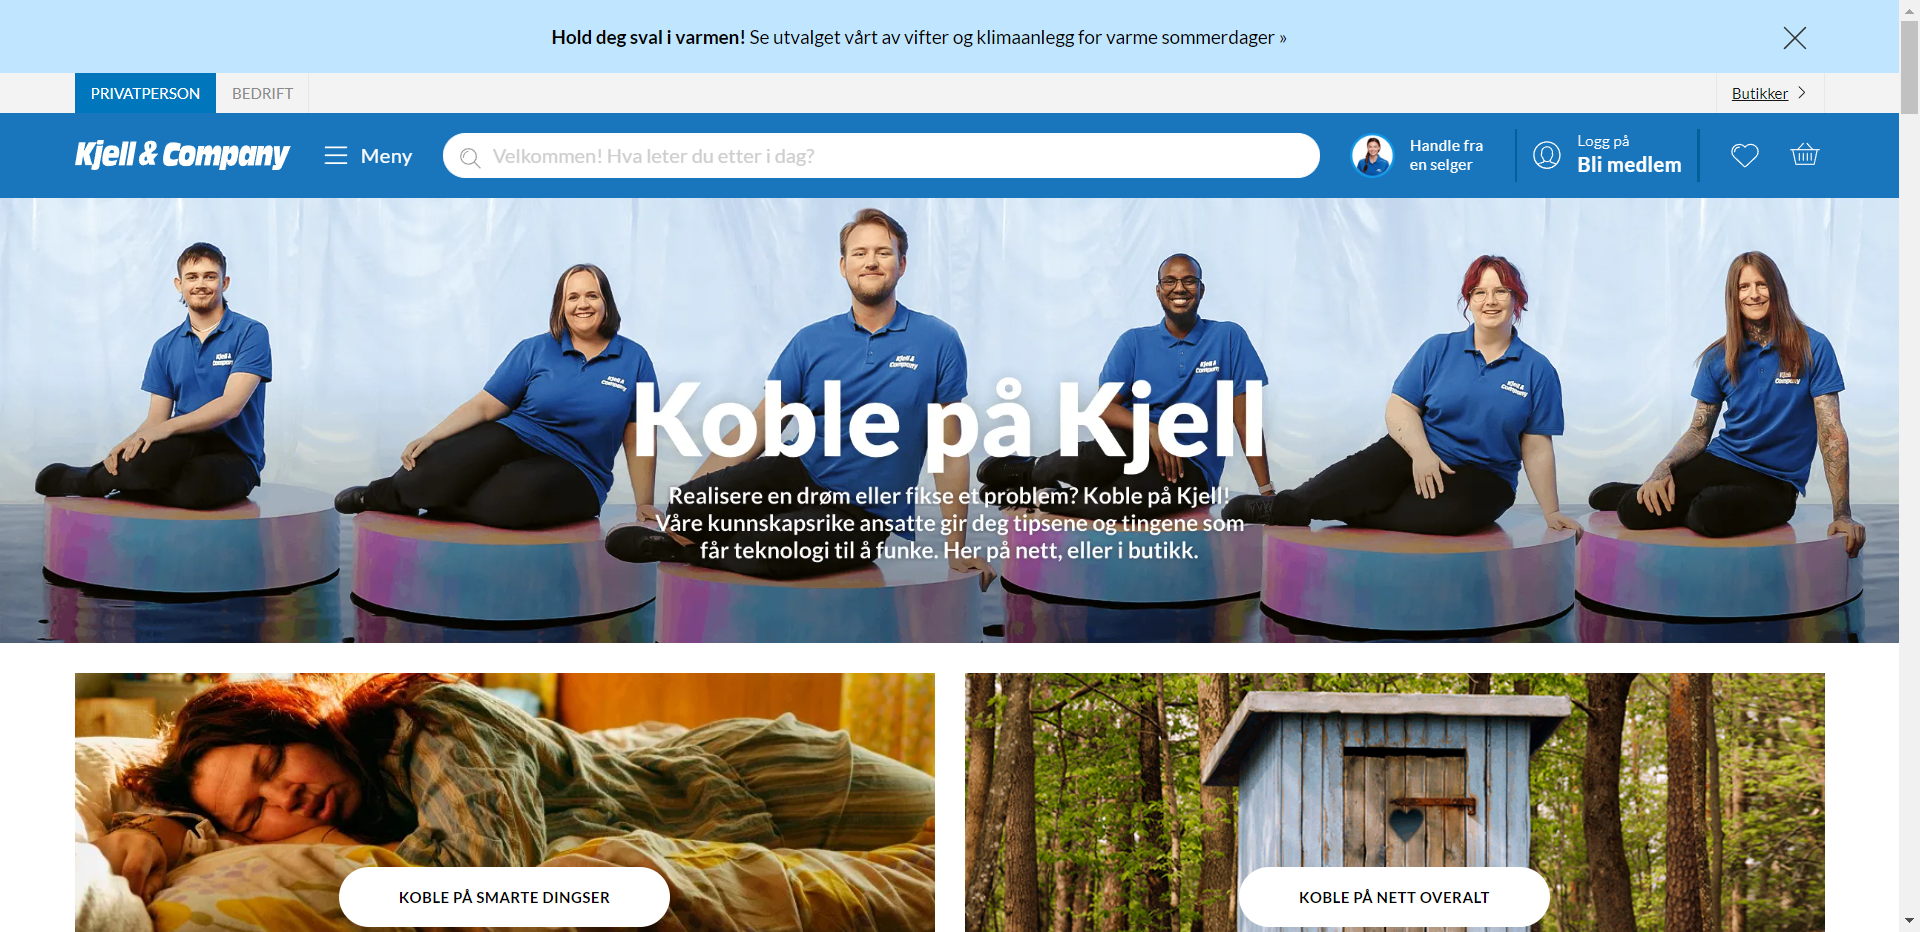 Kjell.com nettbutikk - Les omtalen av nettbutikken